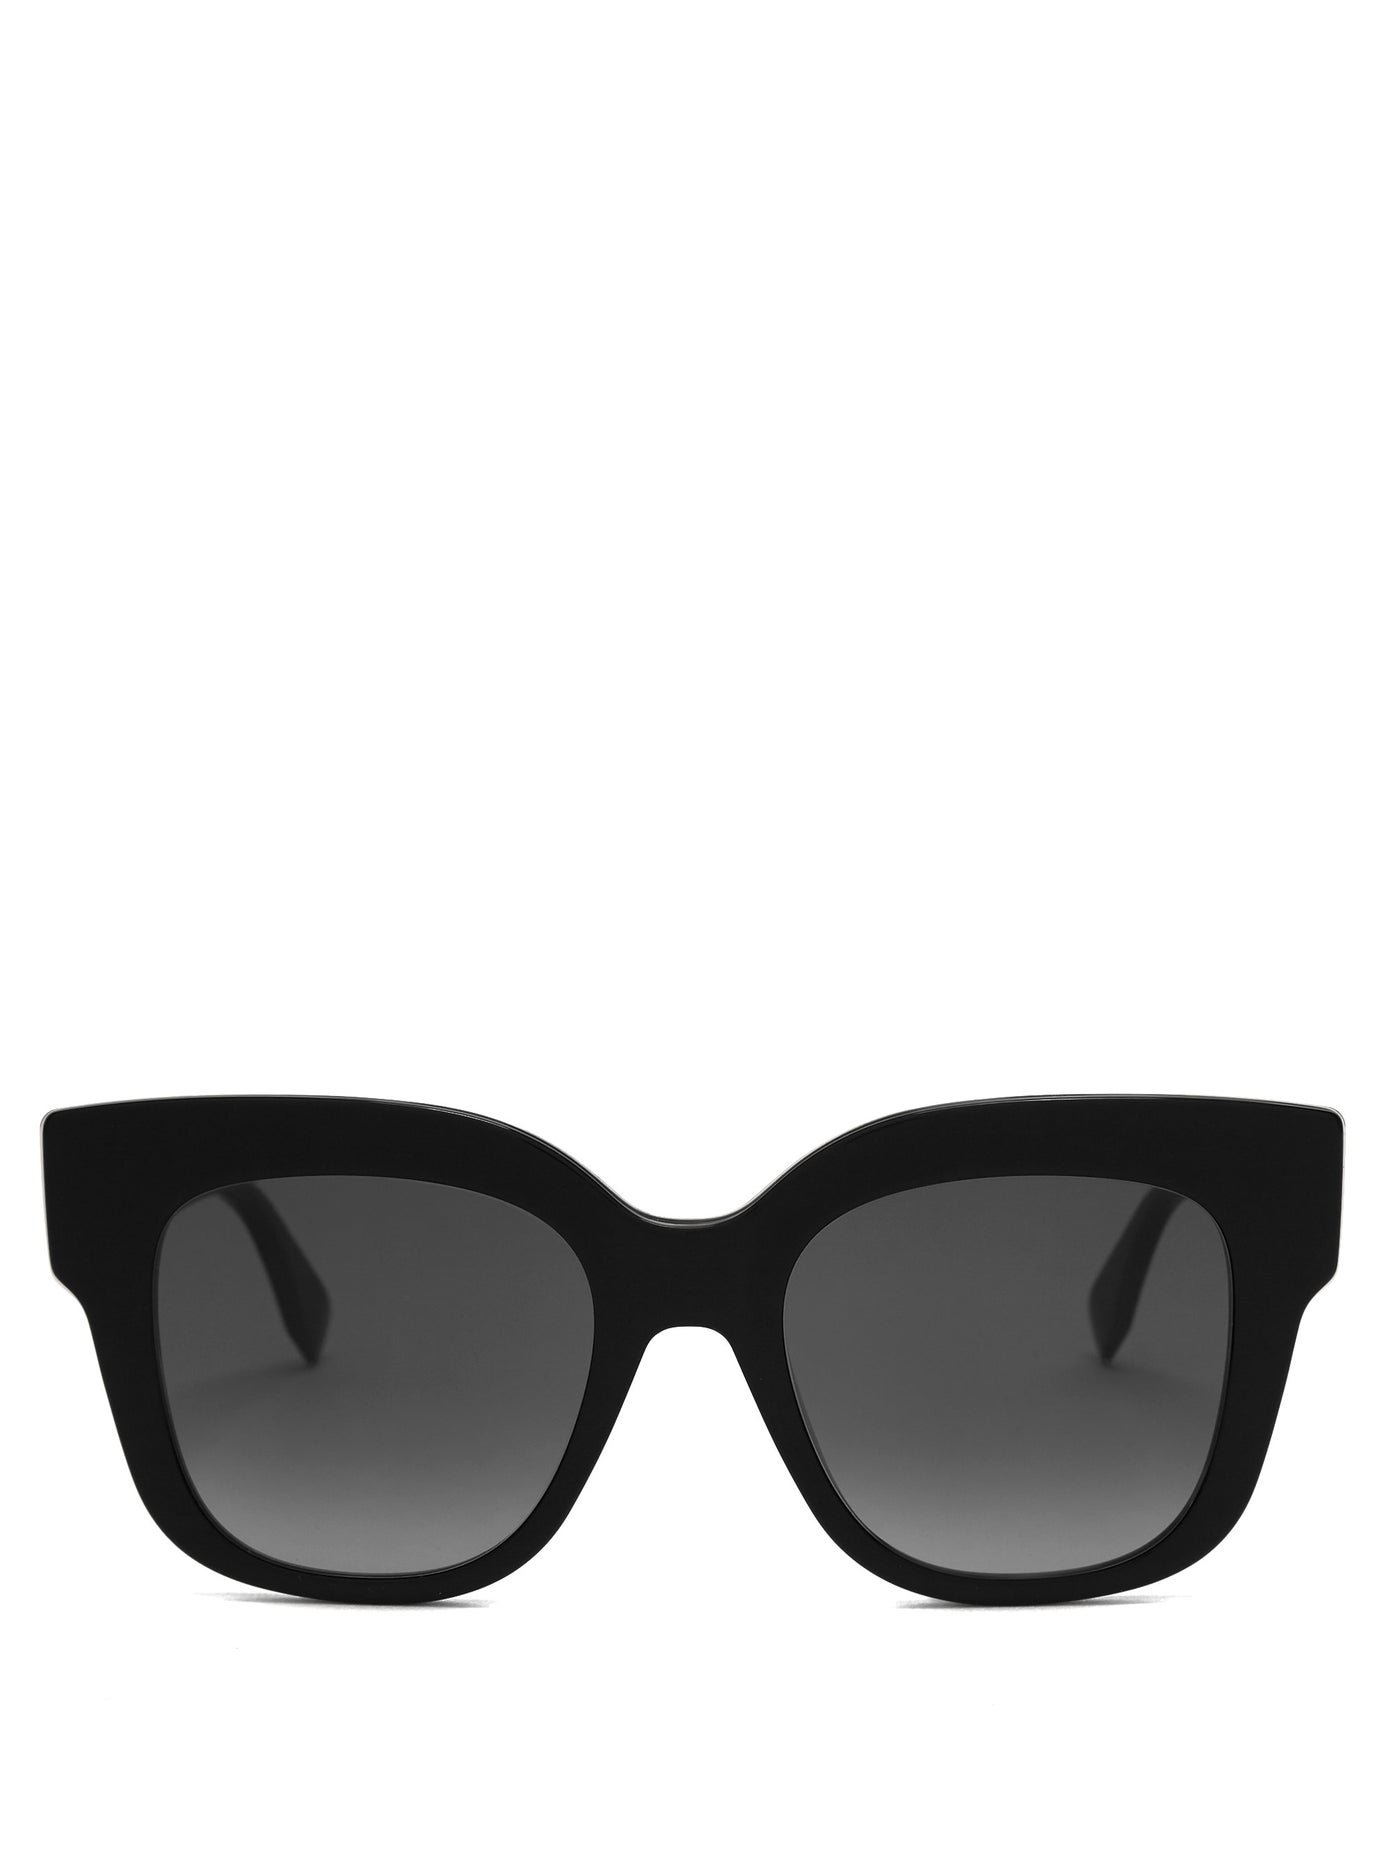 fendi black glasses